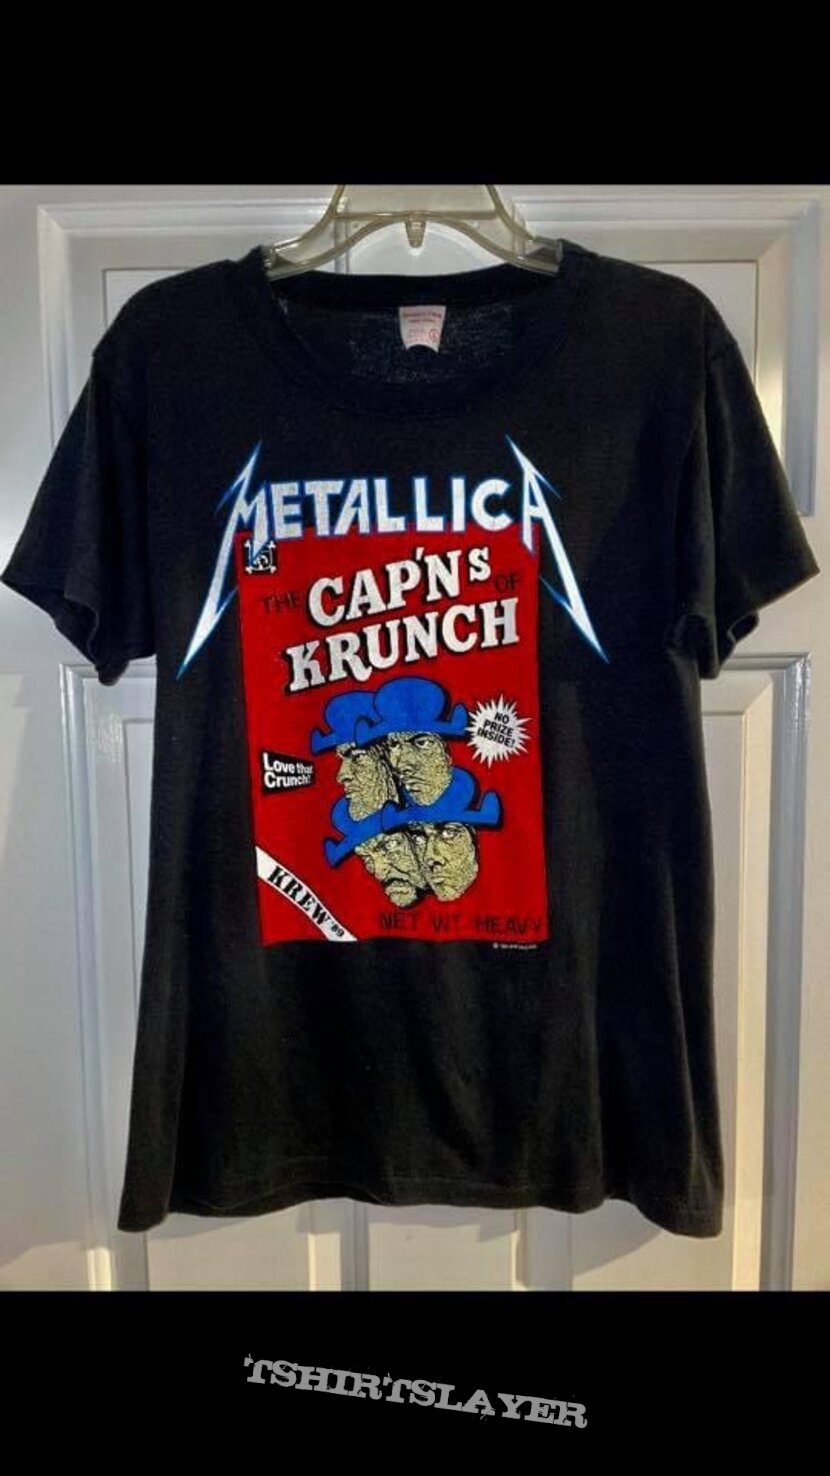 1989 Metallica Cap’ns of Krunch Krew shirt. 